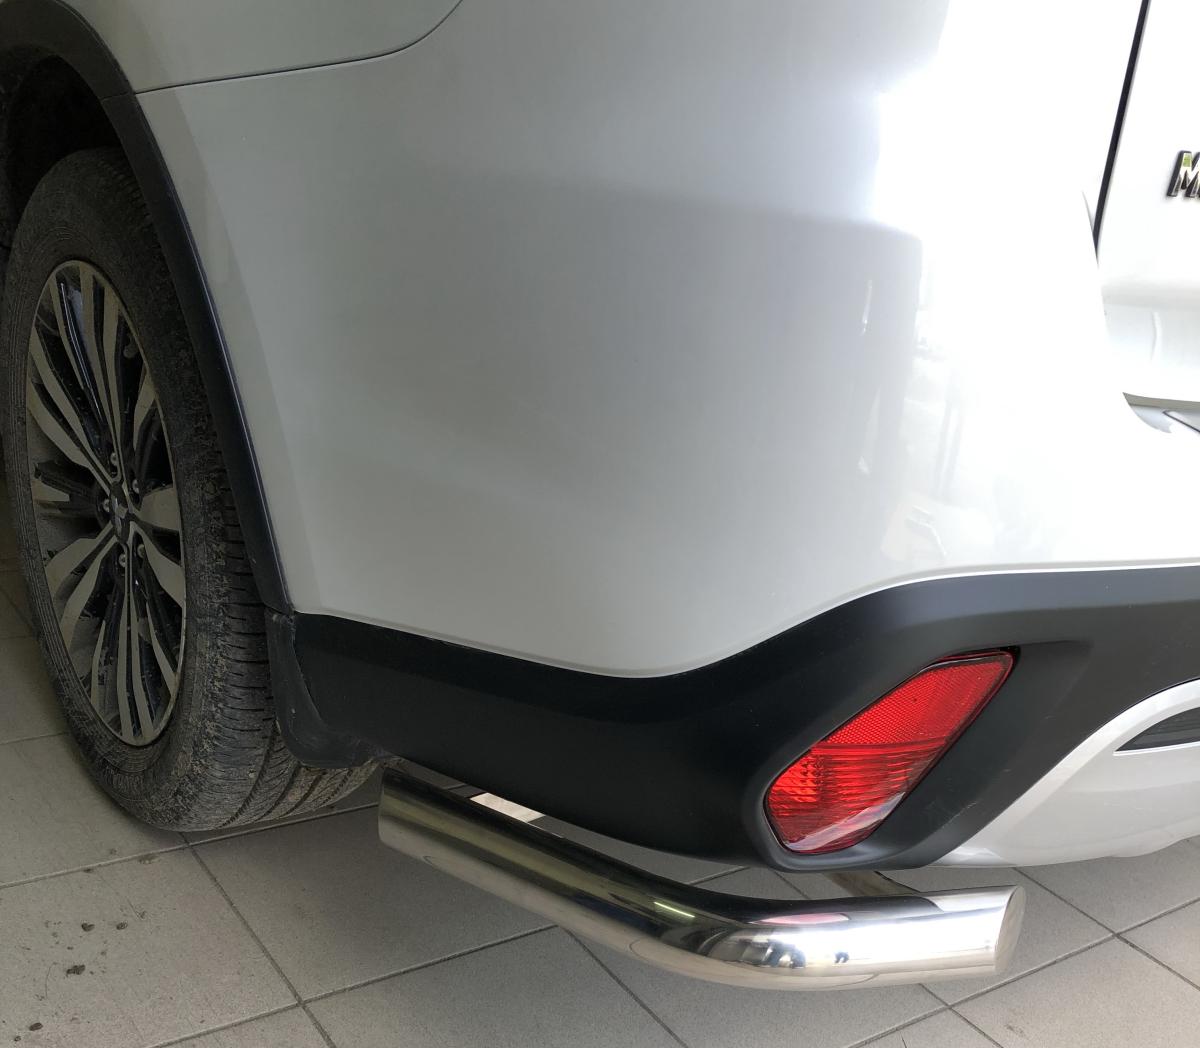 Защита заднего бампера угловая для автомобиля Mitsubishi Outlander 2019, Россия MSO.19.17